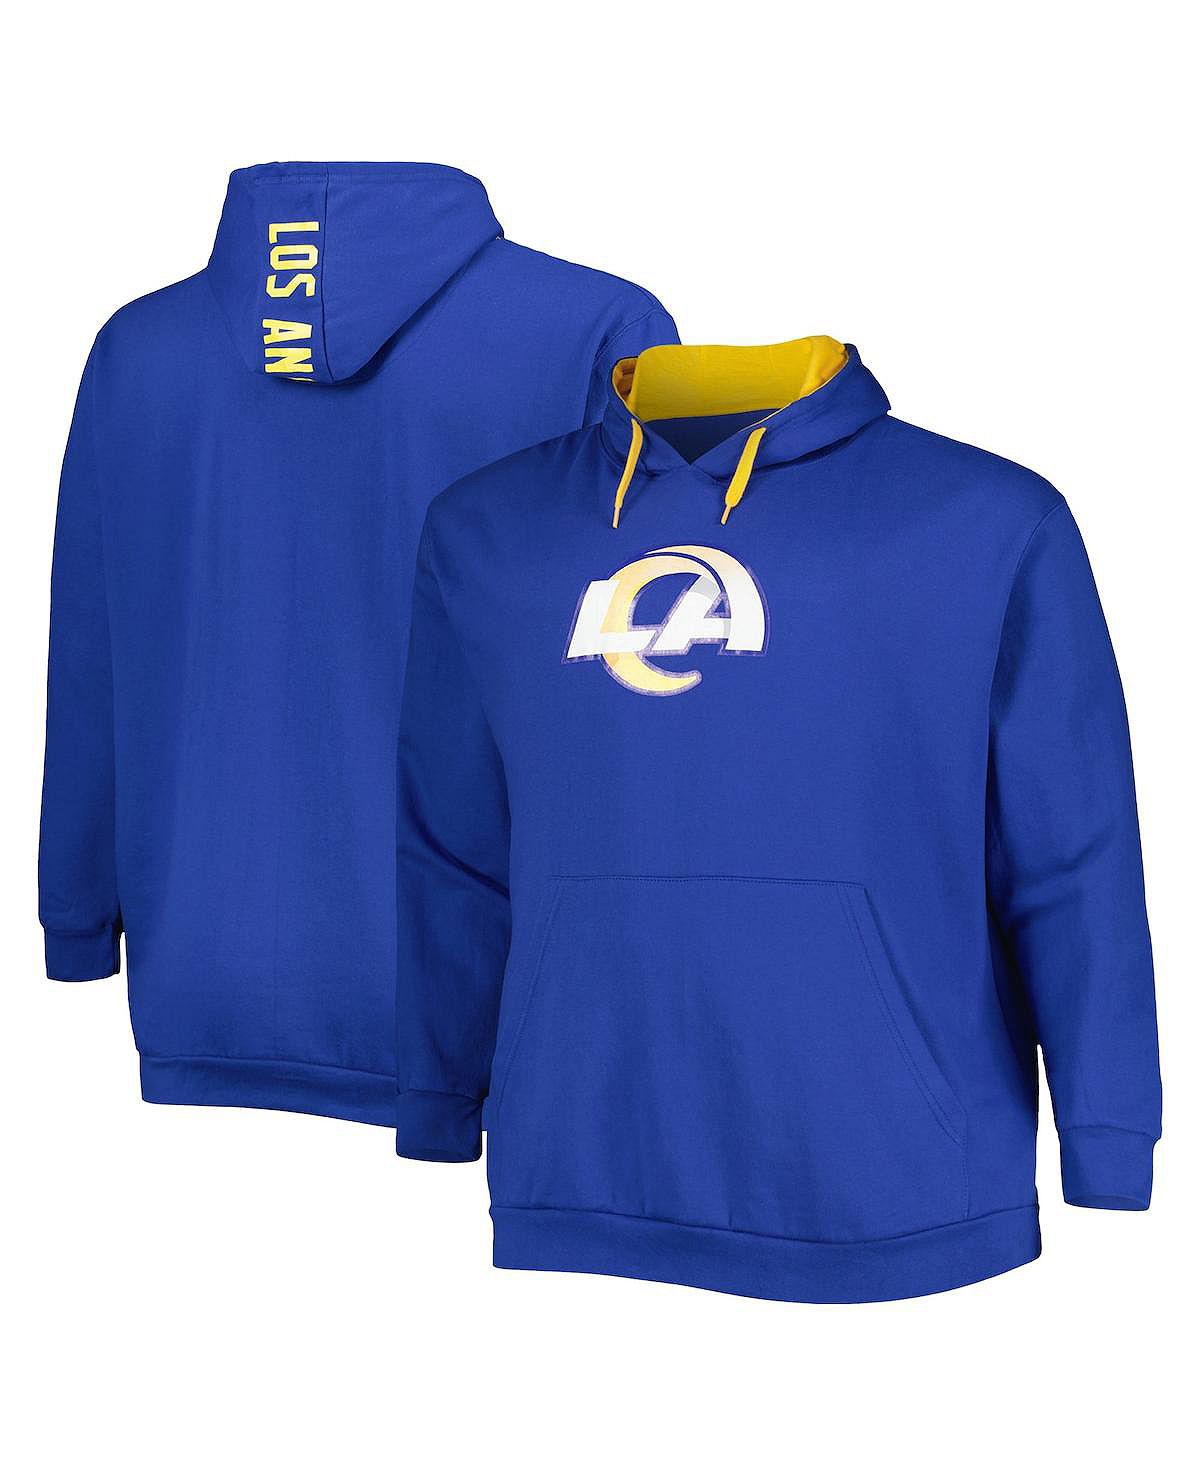 Мужской пуловер с капюшоном и логотипом Royal Los Angeles Rams Big and Tall Profile толстовка most los angeles средней длины размер 128 синий